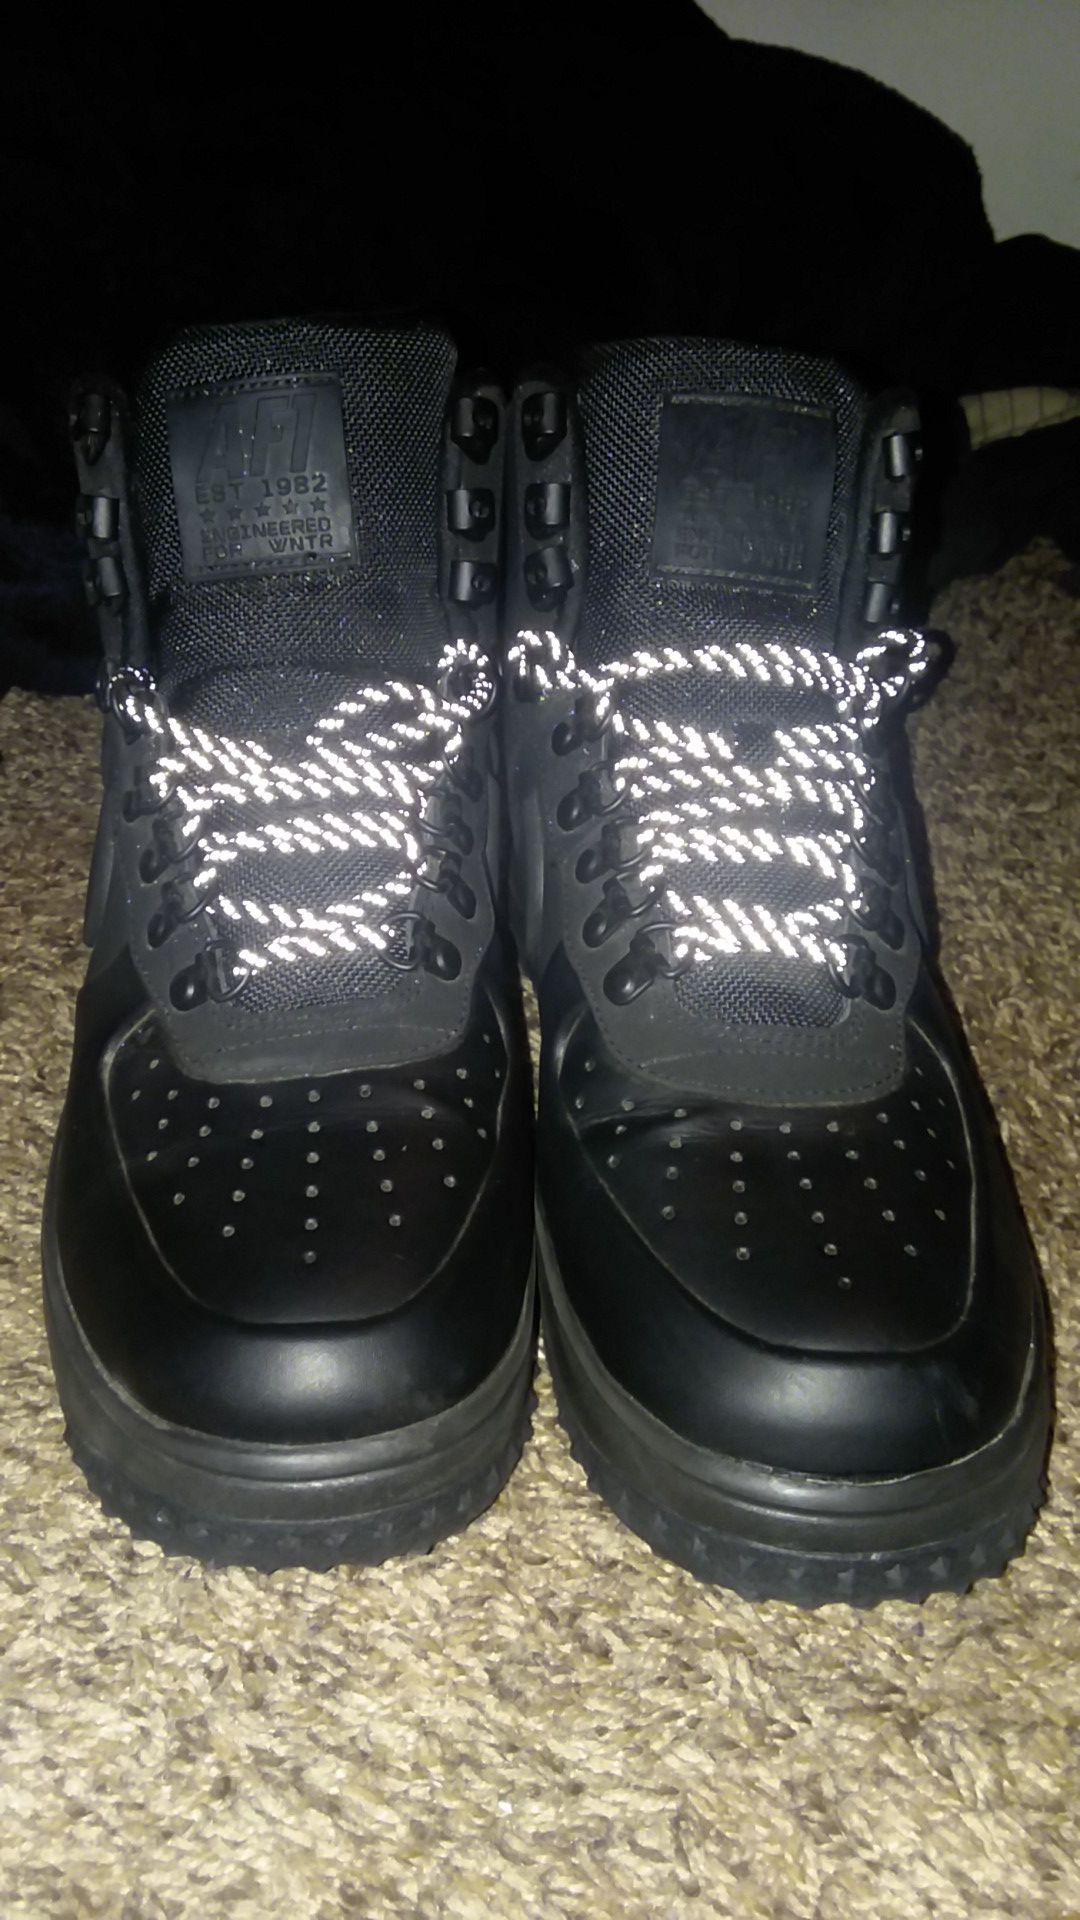 Black Nike AF1 boot